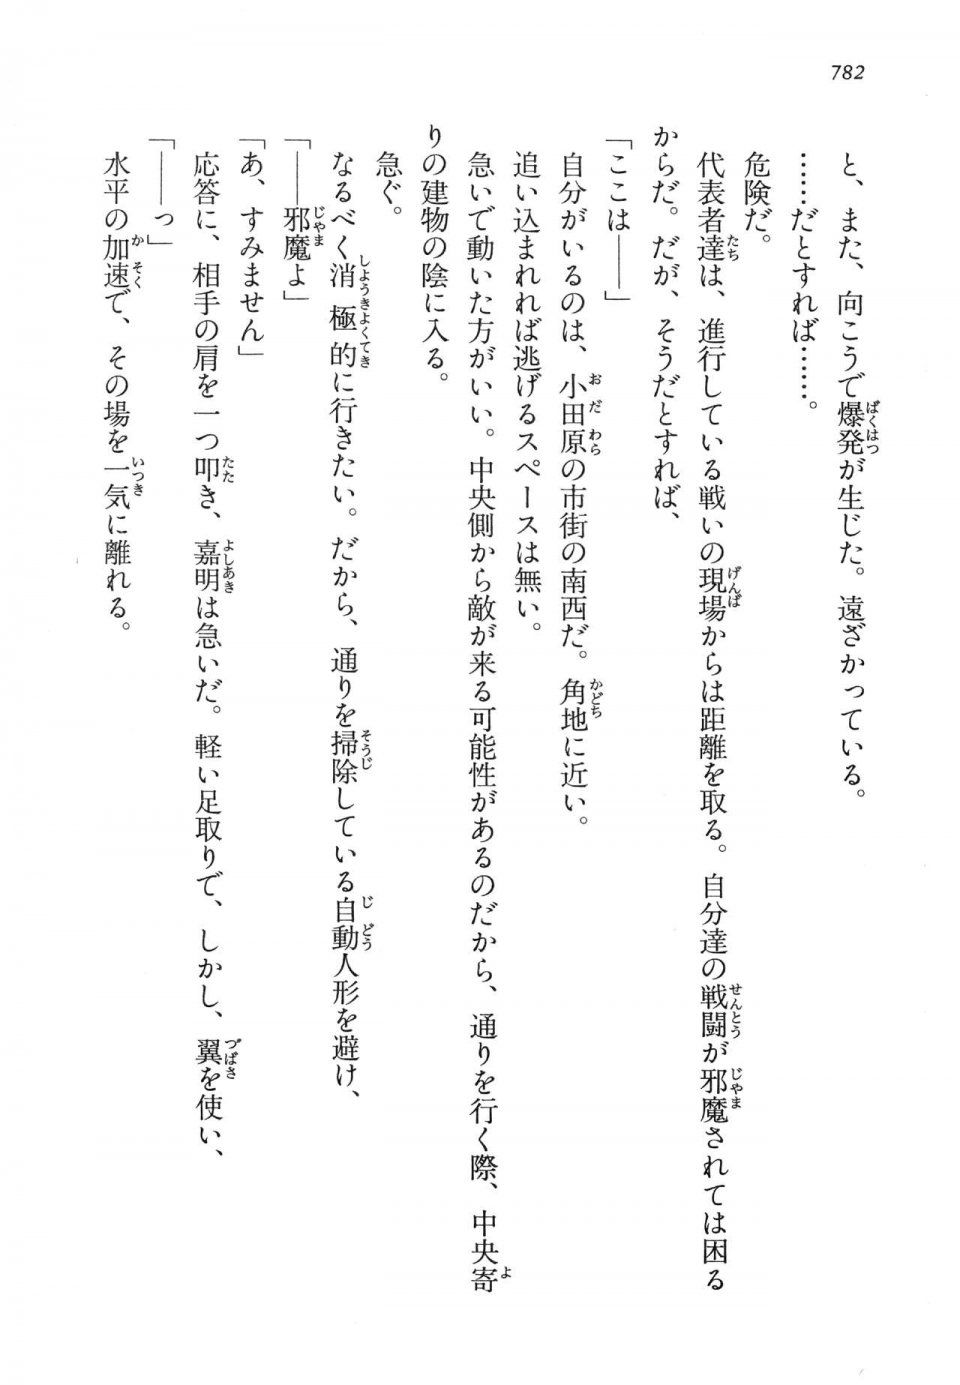 Kyoukai Senjou no Horizon LN Vol 14(6B) - Photo #782